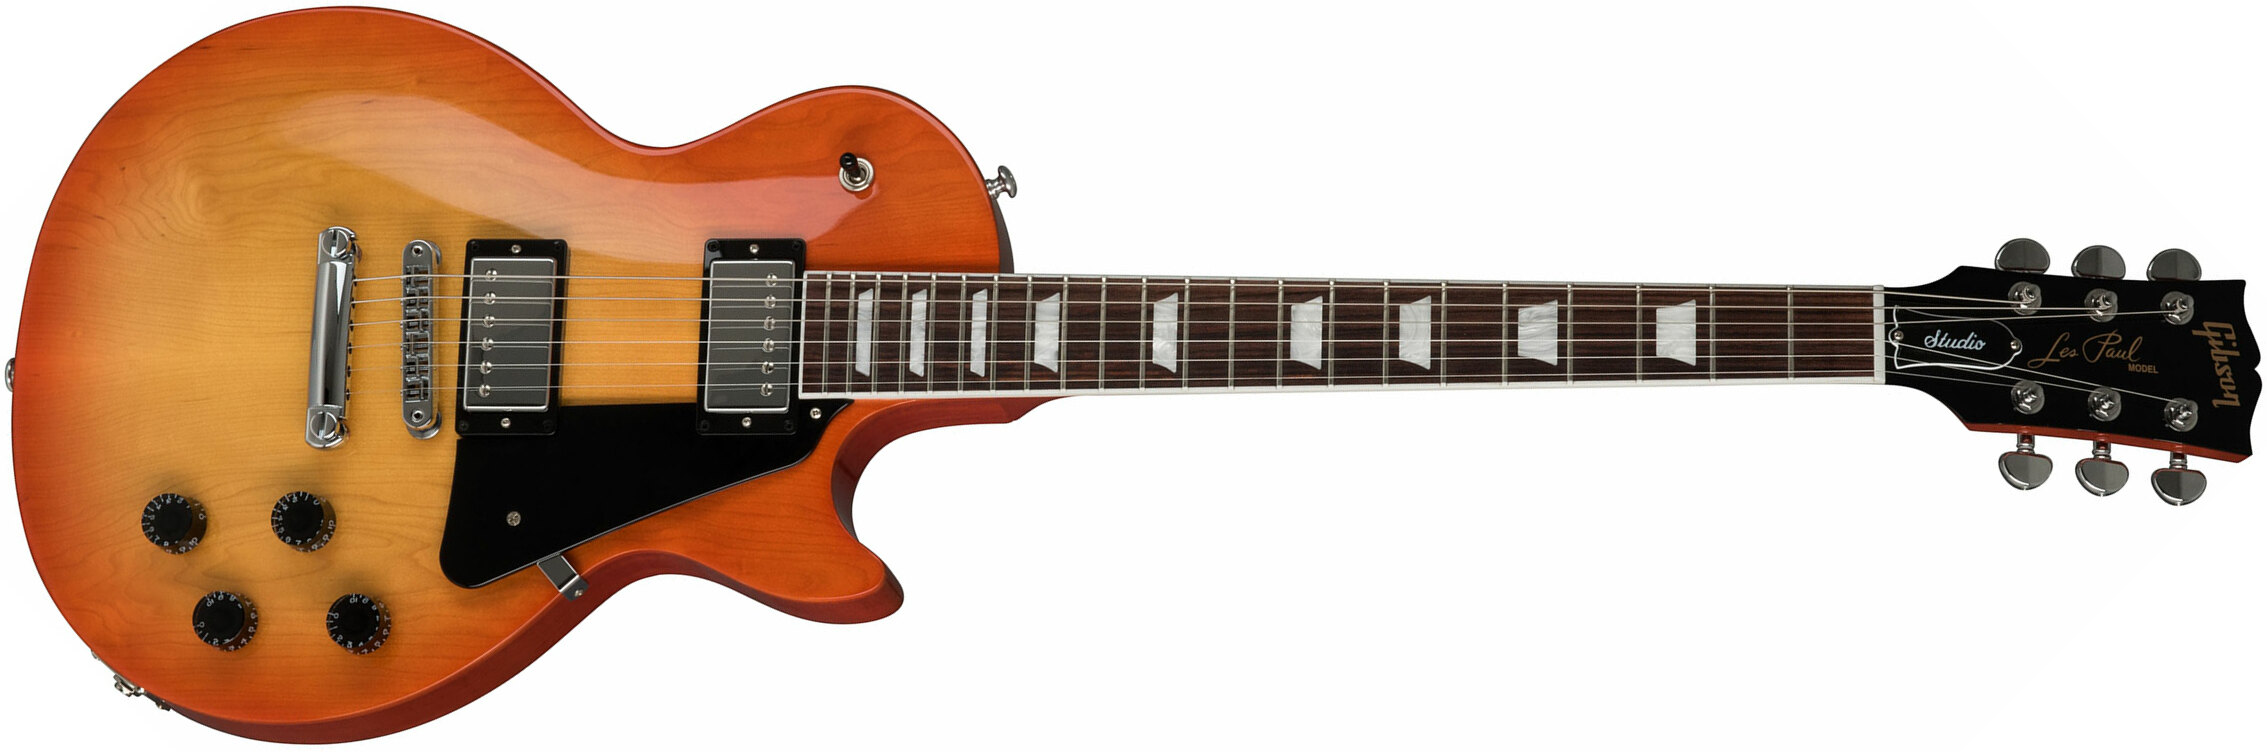 Gibson Les Paul Studio 2019 Hh Ht Rw - Tangerine Burst - Enkel gesneden elektrische gitaar - Main picture